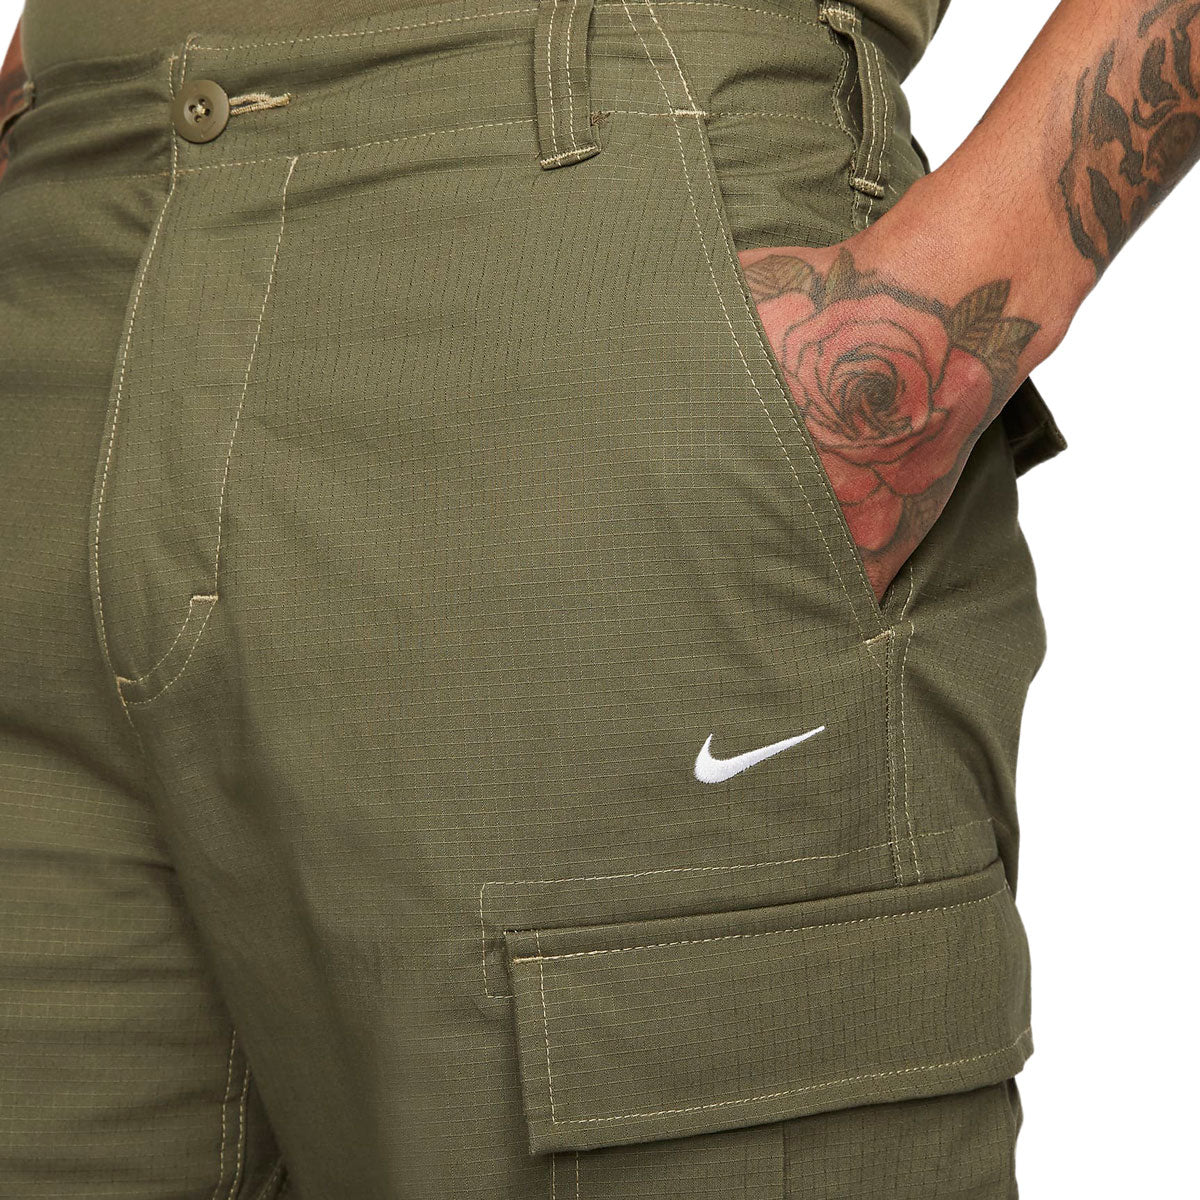 Nike SB Kearny Cargo Pants - Medium Olive/White image 3